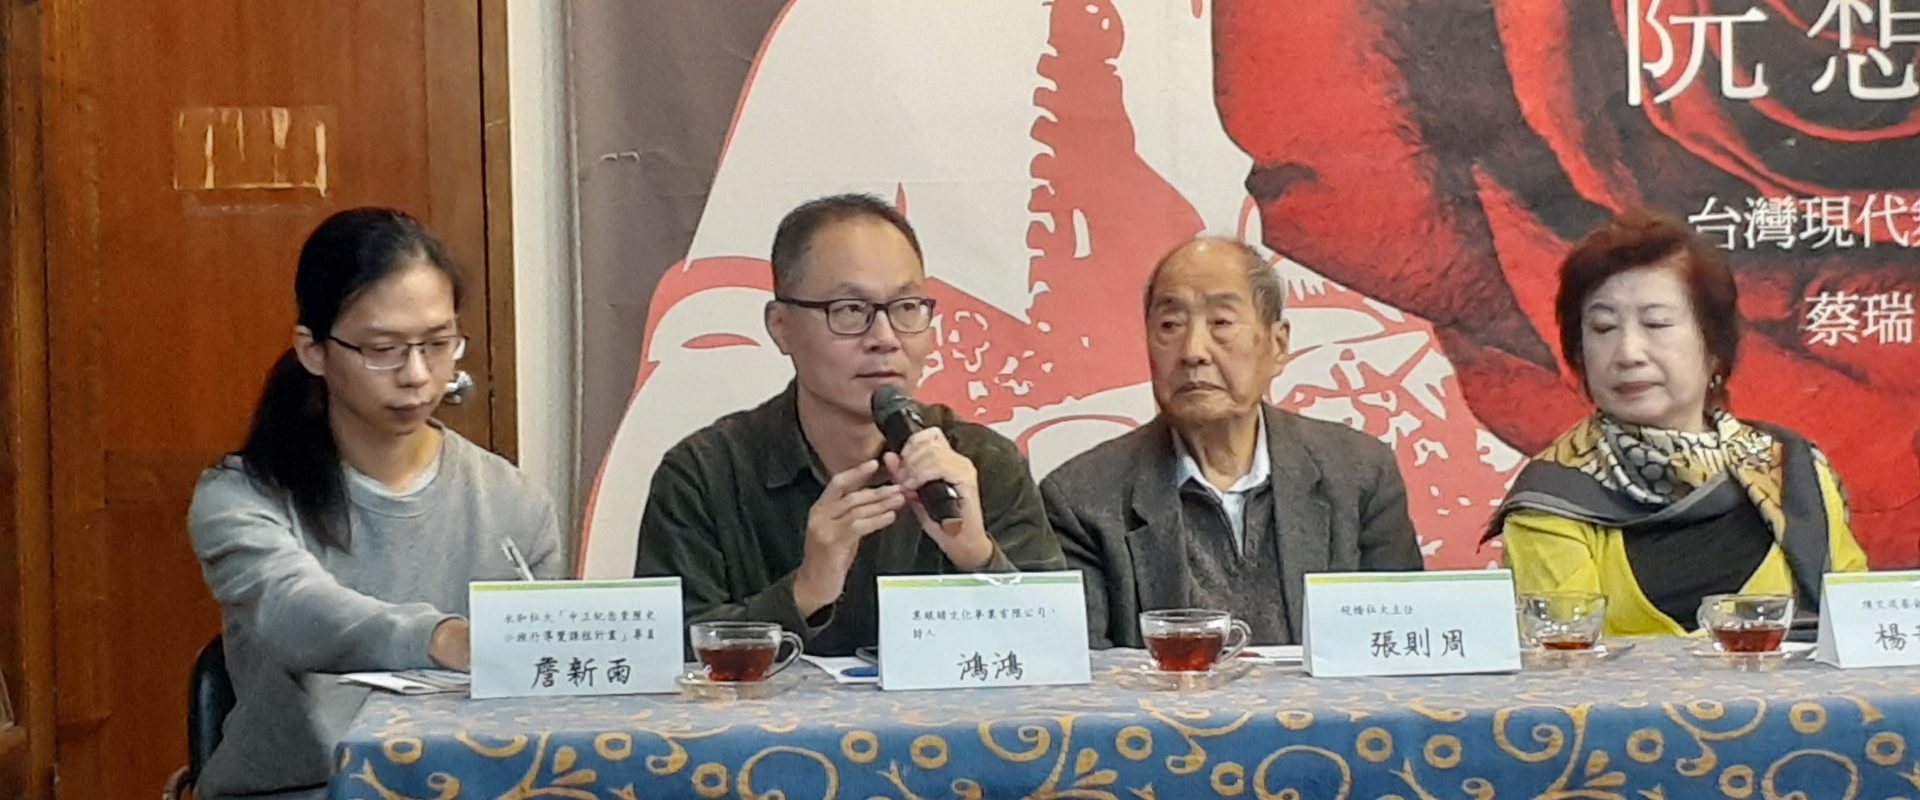 黑眼睛文化事業有限公司出席的詩人鴻鴻向社會呼籲，台灣人應該對威權象徵大聲說不同意。圖/陳文成基金會提供